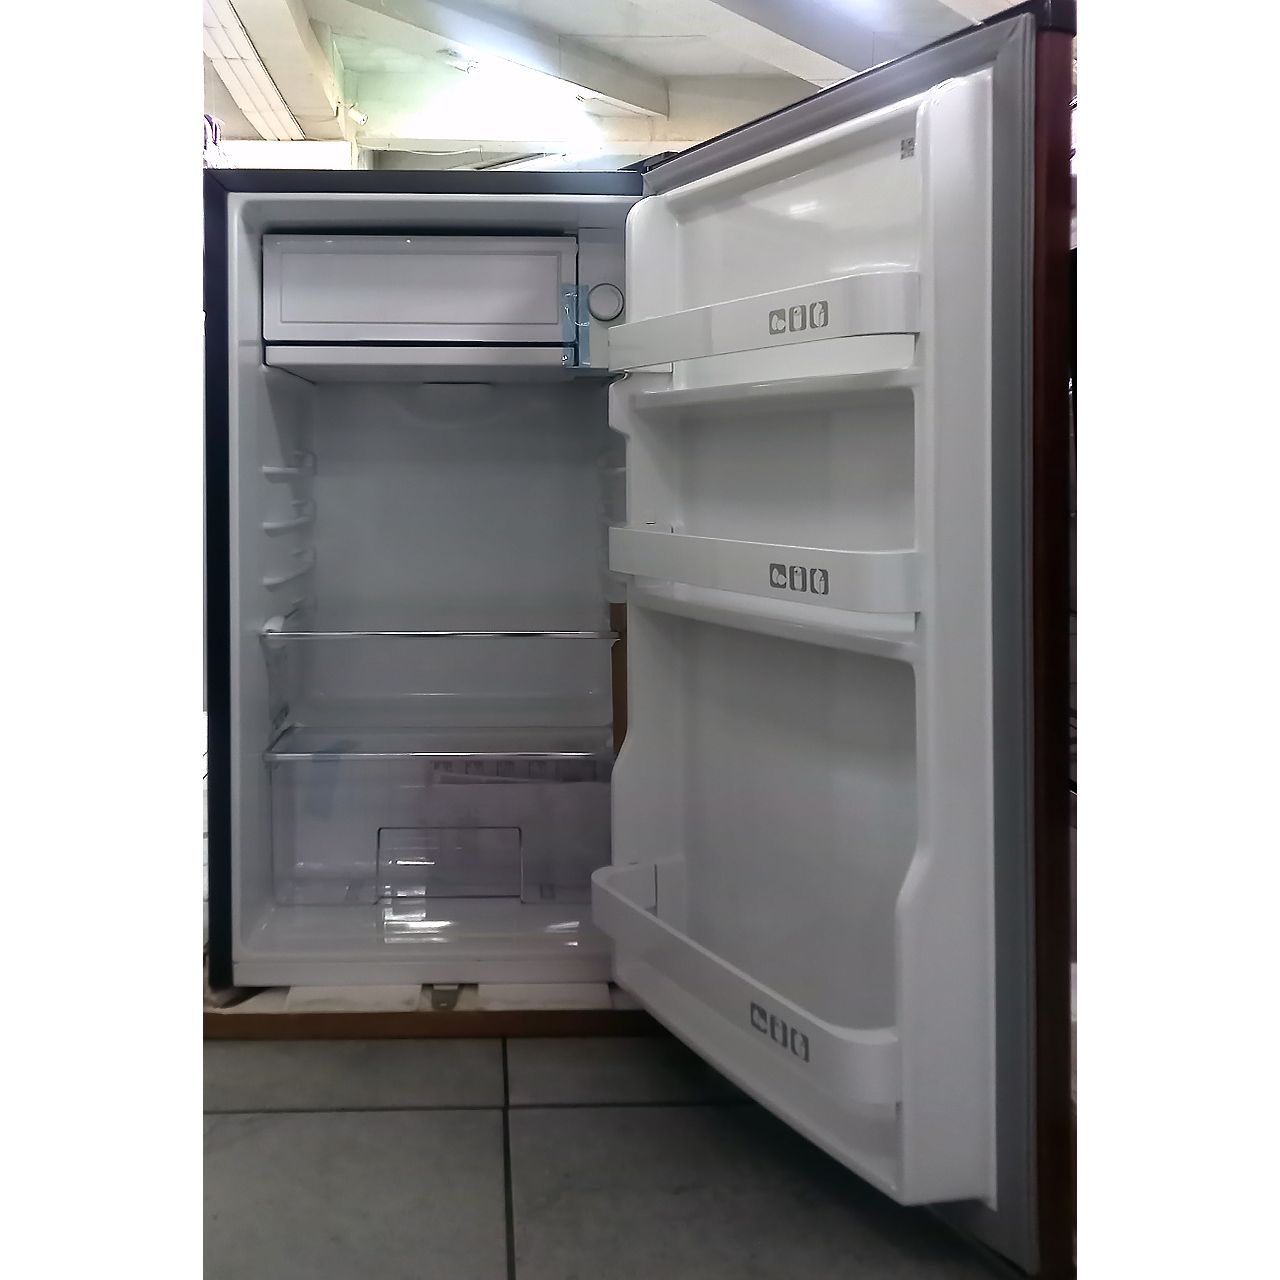 Холодильник однокамерный Artel 90 литров